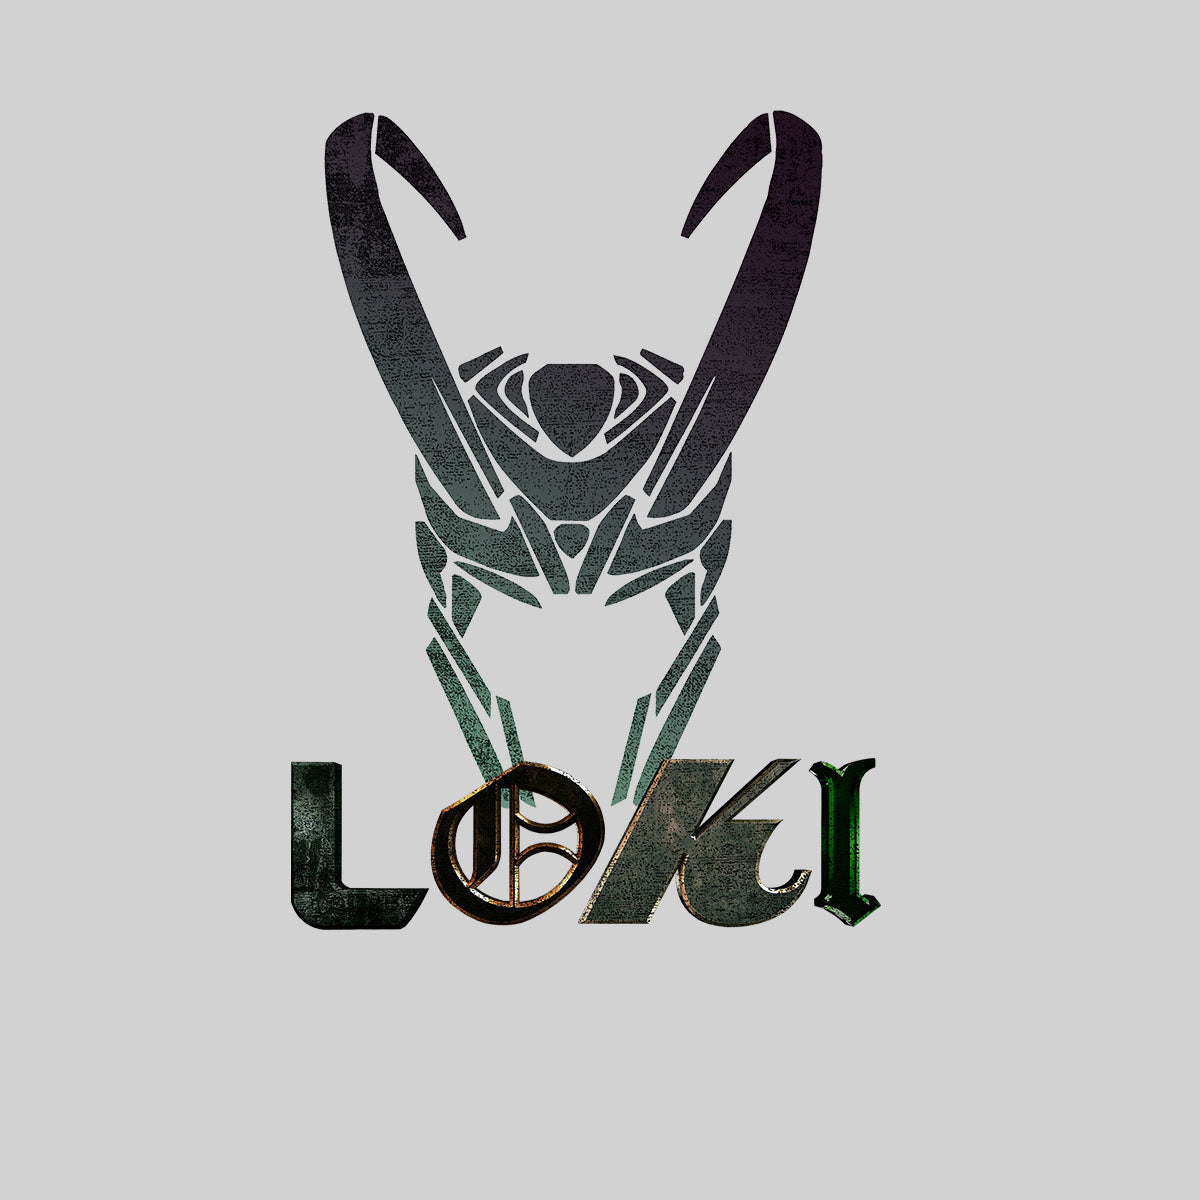 Loki Helmet Marvel Superhero Comic Star Tom Hiddleston T-shirt for Kids - Kuzi Tees